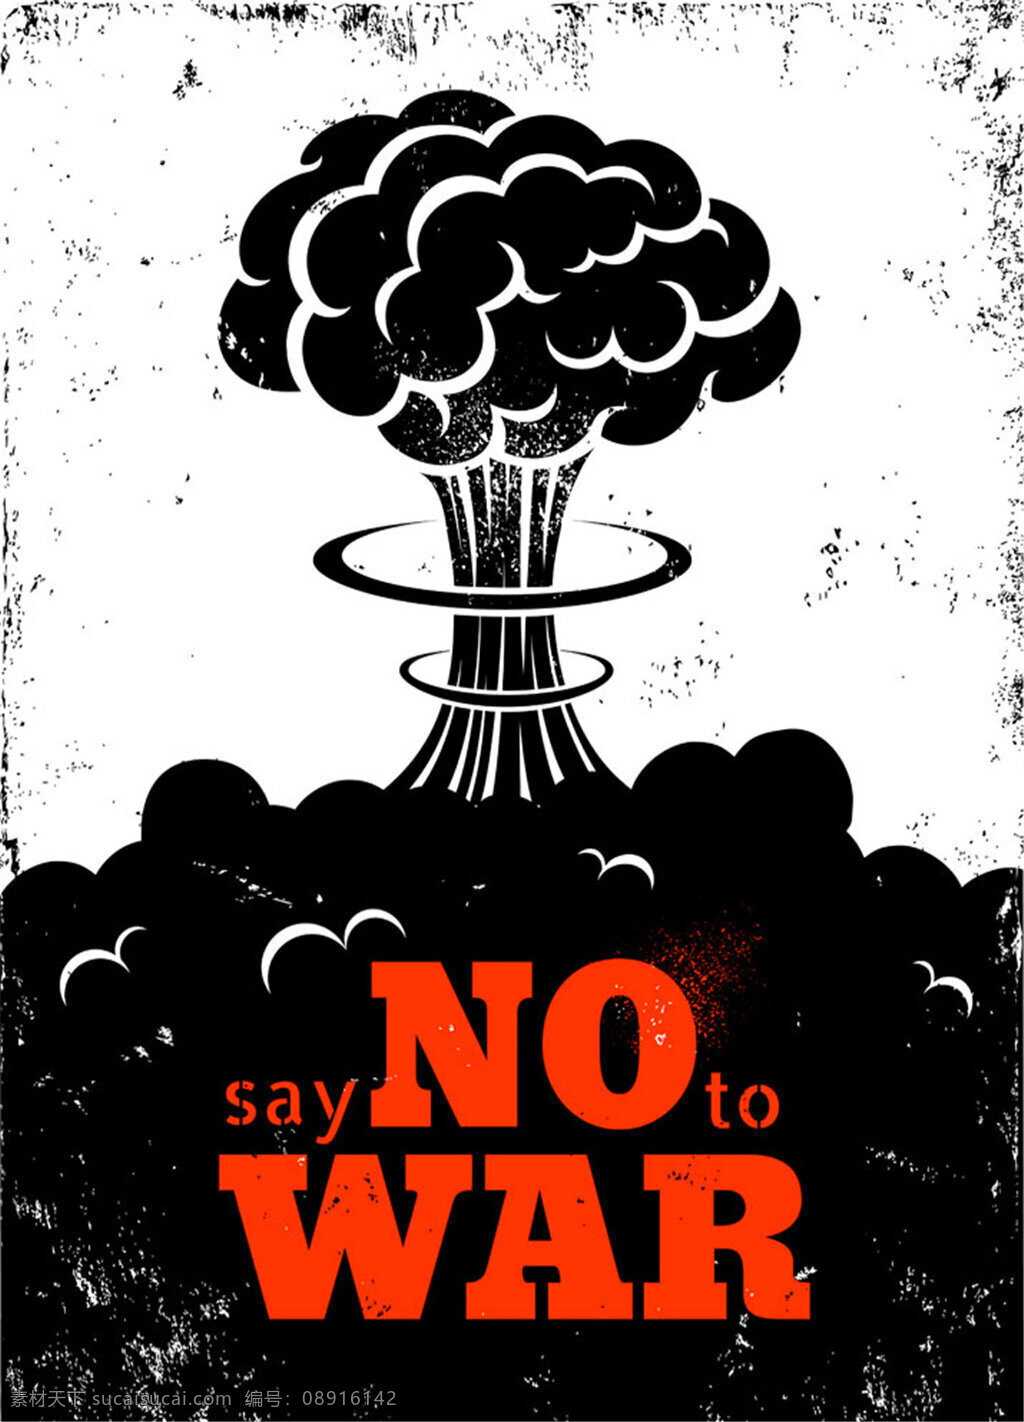 反对 战争 标语 核爆炸 蘑菇云 原子弹爆炸 核武器 爆炸漫画 底纹背景 底纹边框 矢量素材